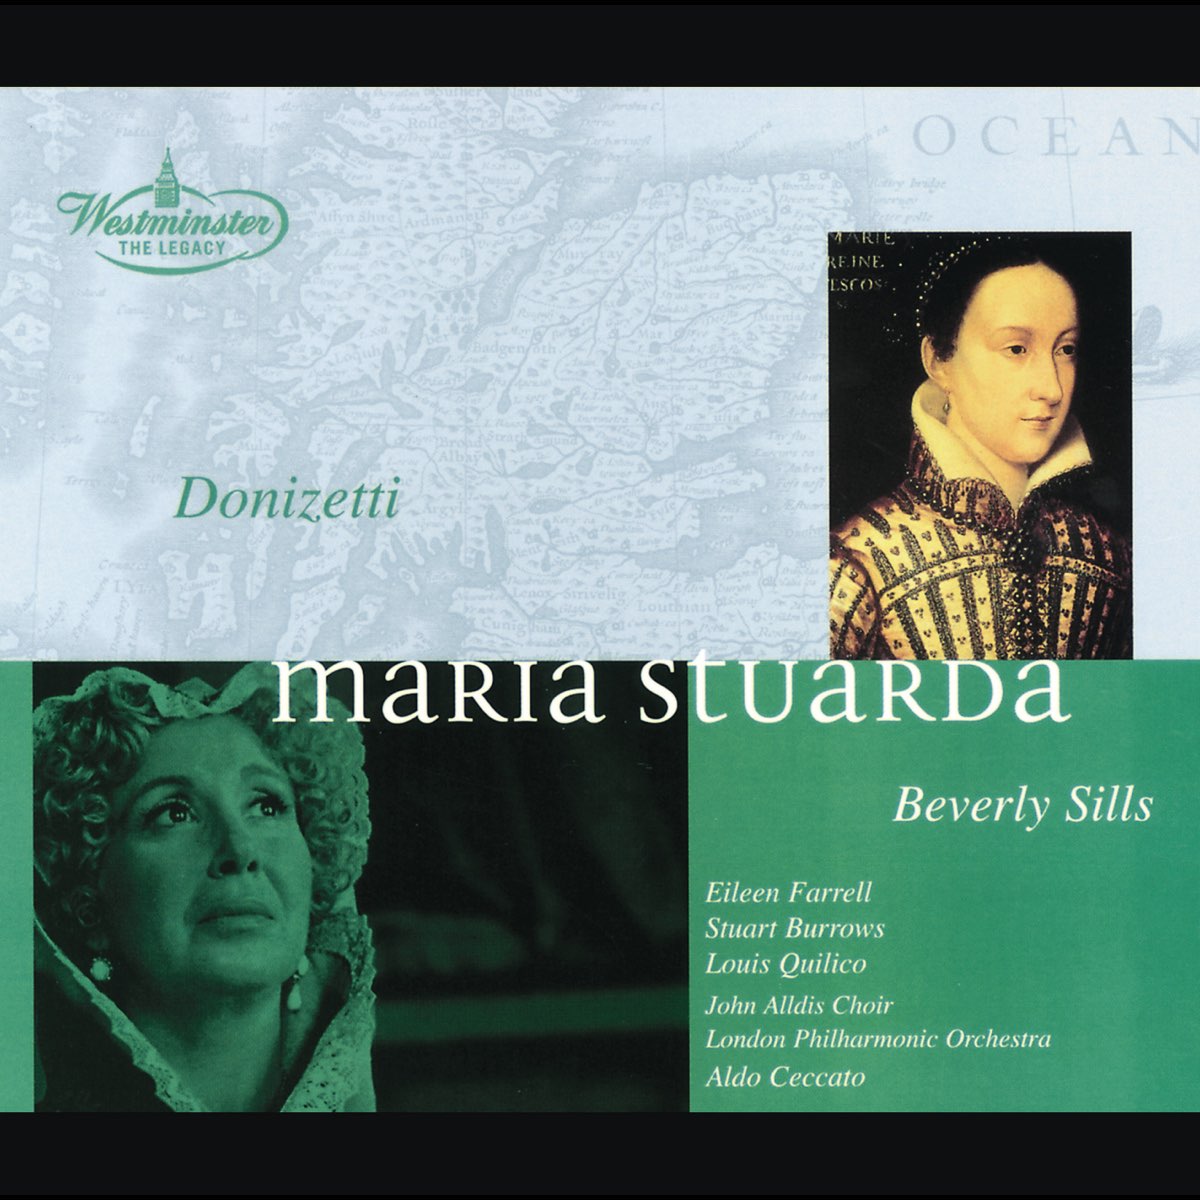 ‎Donizetti: Maria Stuarda - Album by Aldo Ceccato, Beverly Sills ...